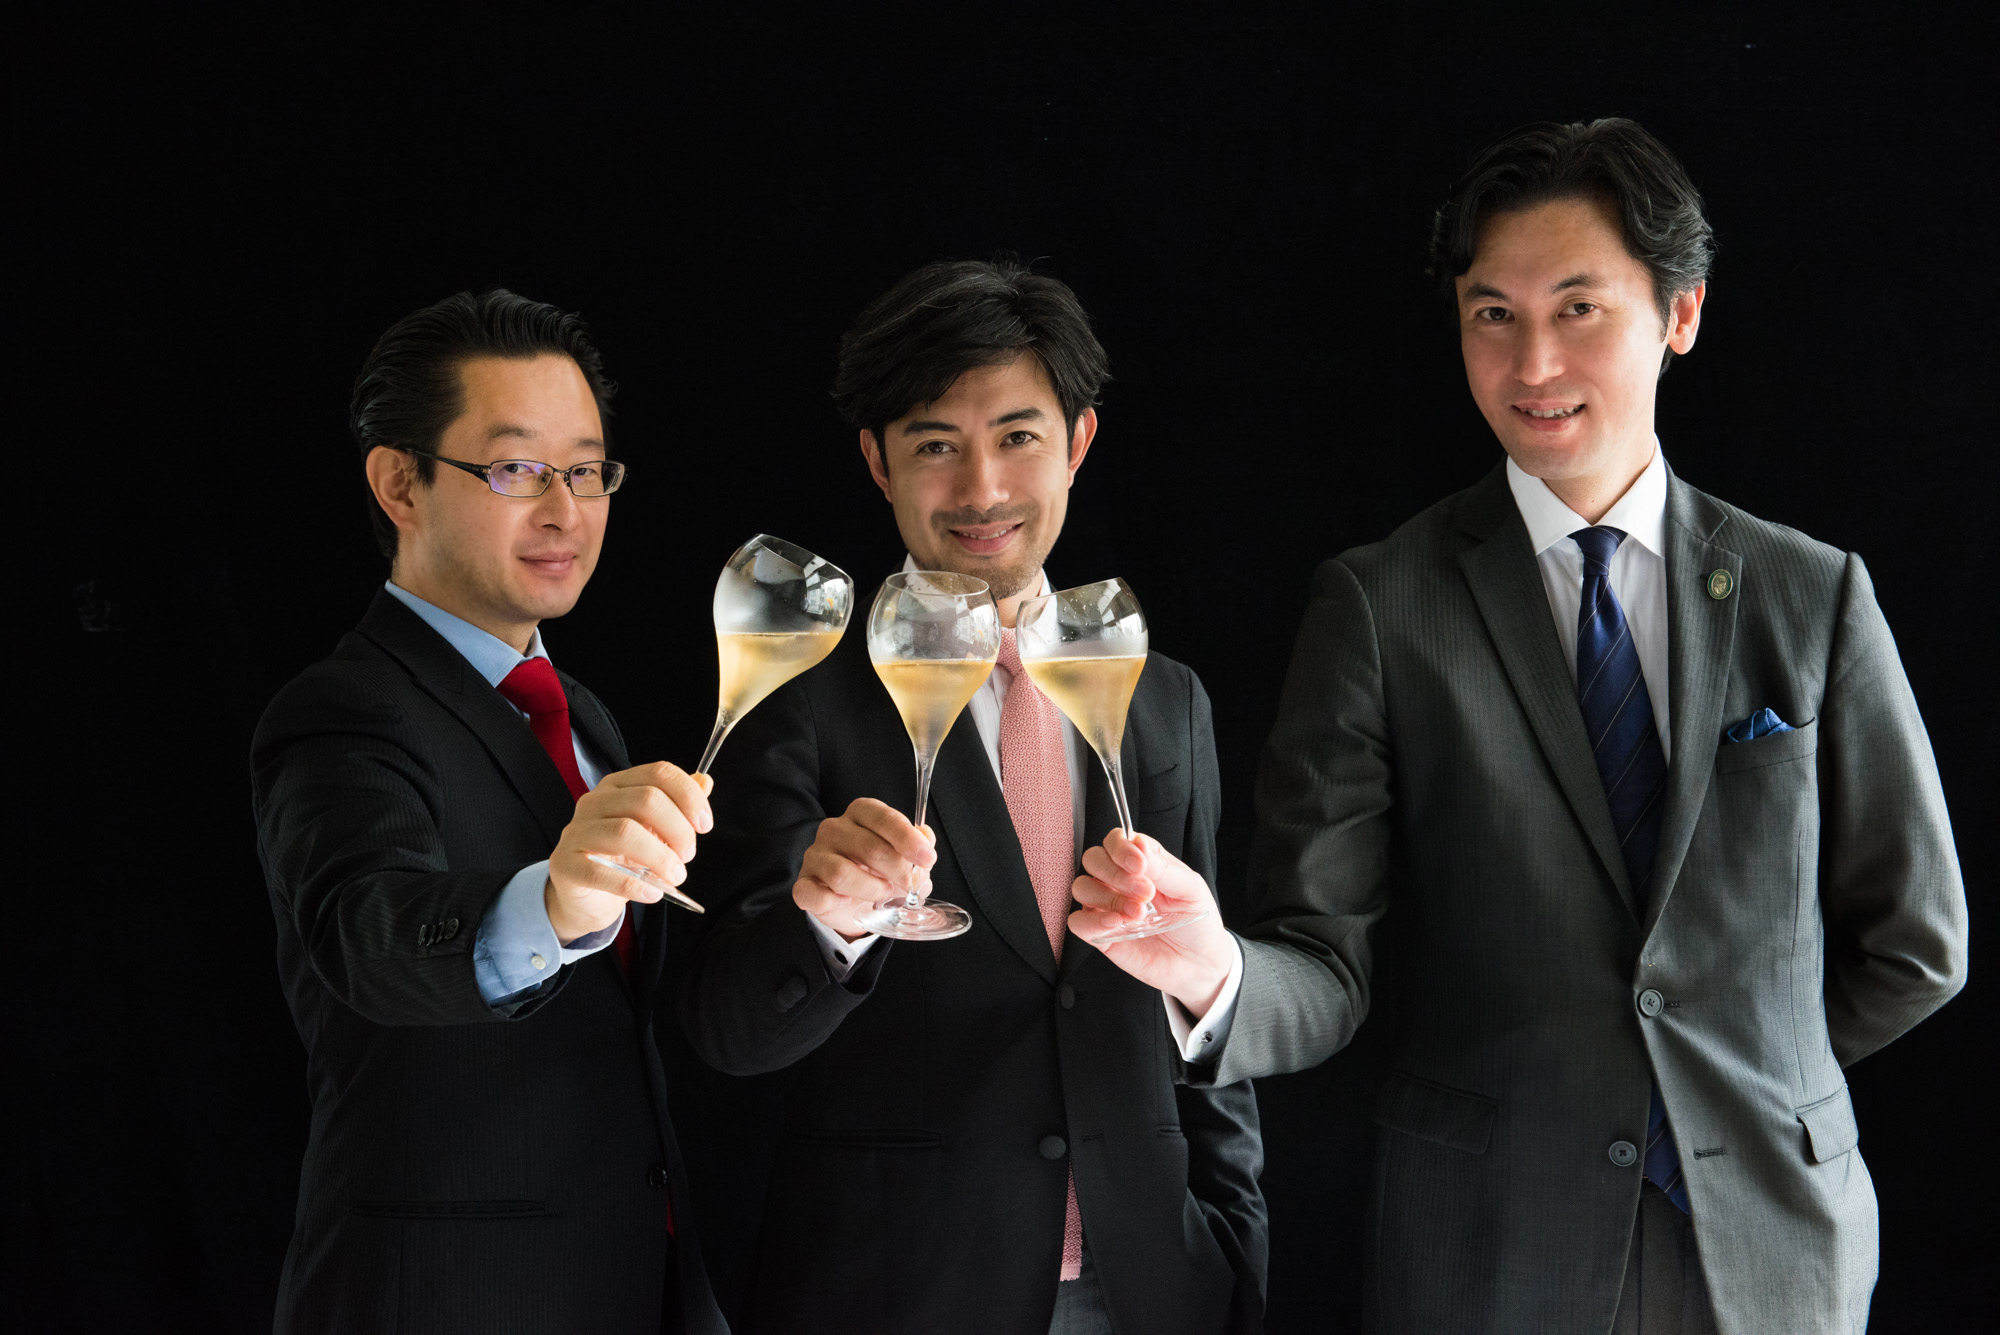 先着限定1 000名様 日本のトップソムリエがセレクトしたシャンパーニュを毎月1回お届け 動画特化型シャンパーニュ定期購入サービス Art Of Champagne 申込受付開始 ワサヴィ株式会社のプレスリリース